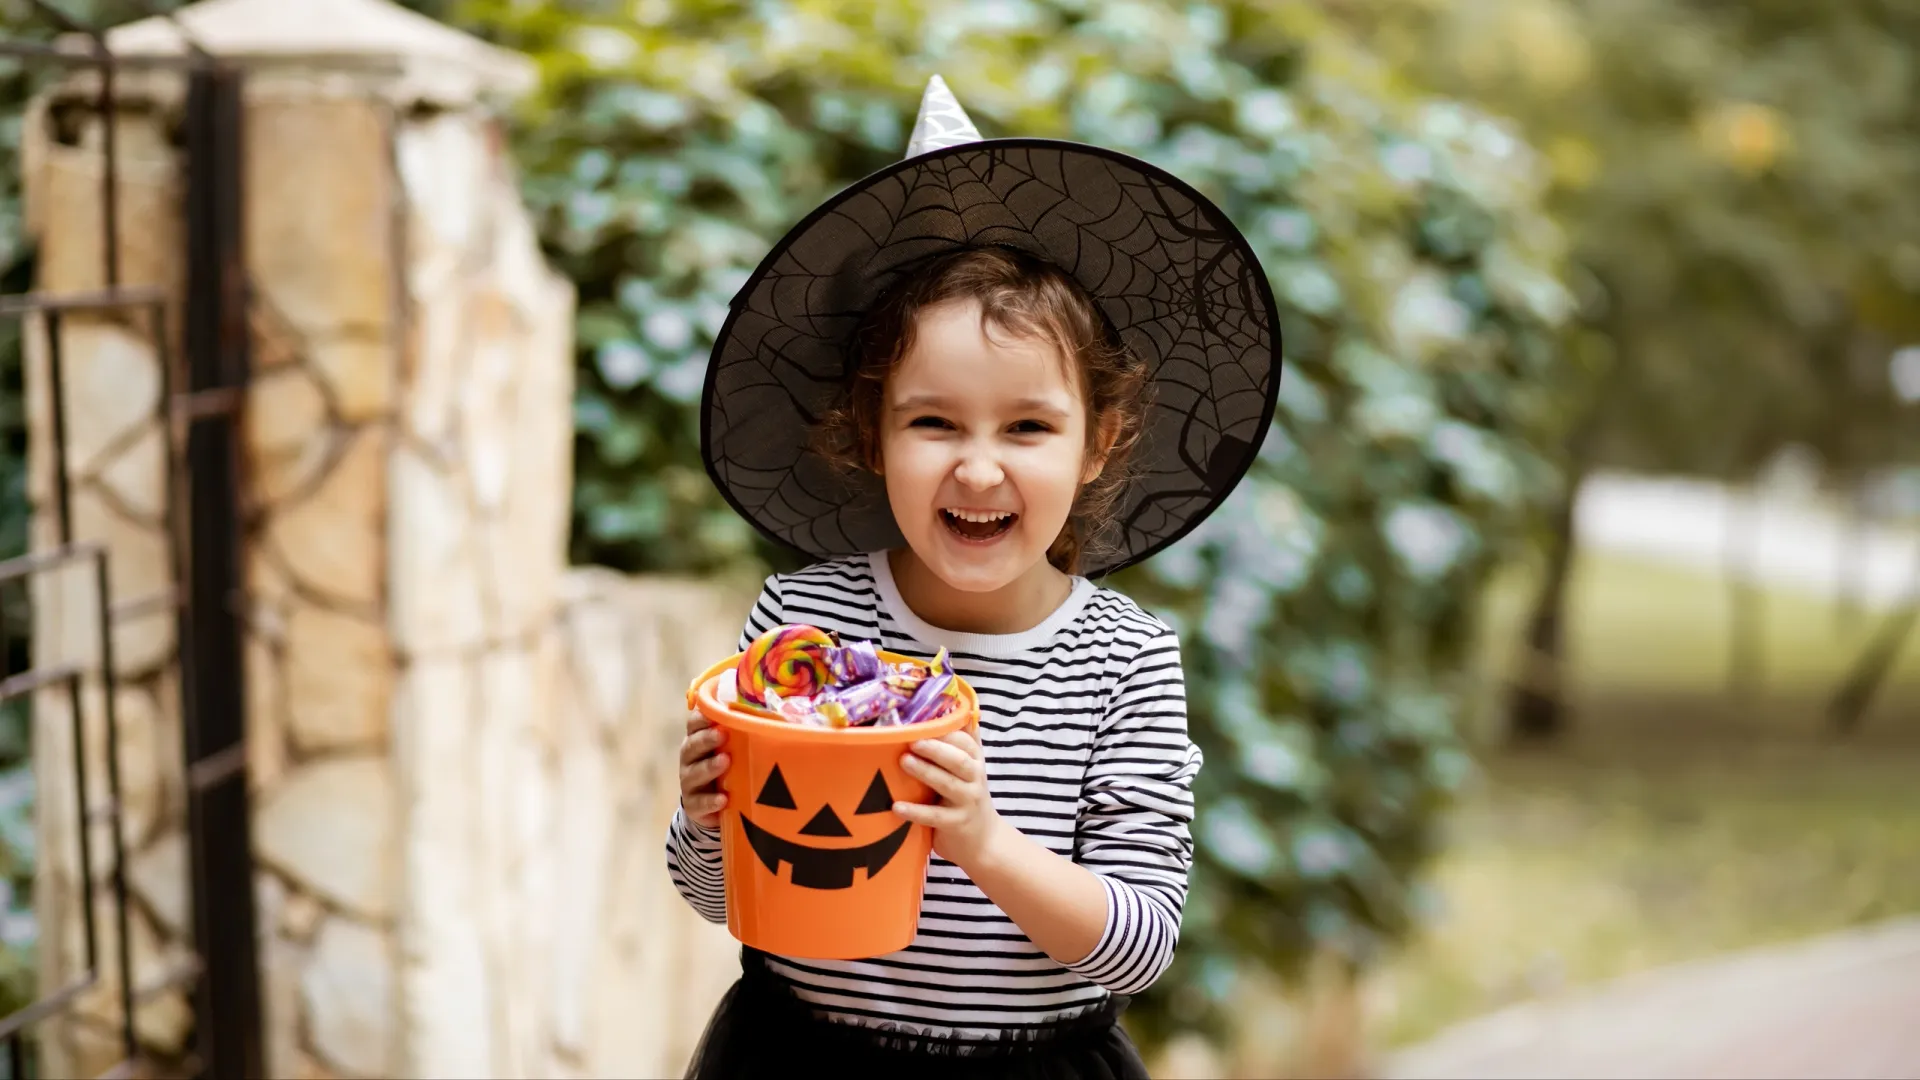 Юная «ведьмочка» довольна «уловом» на Хеллоуин. Фото: Zulfiska / Shutterstock / Fotodom